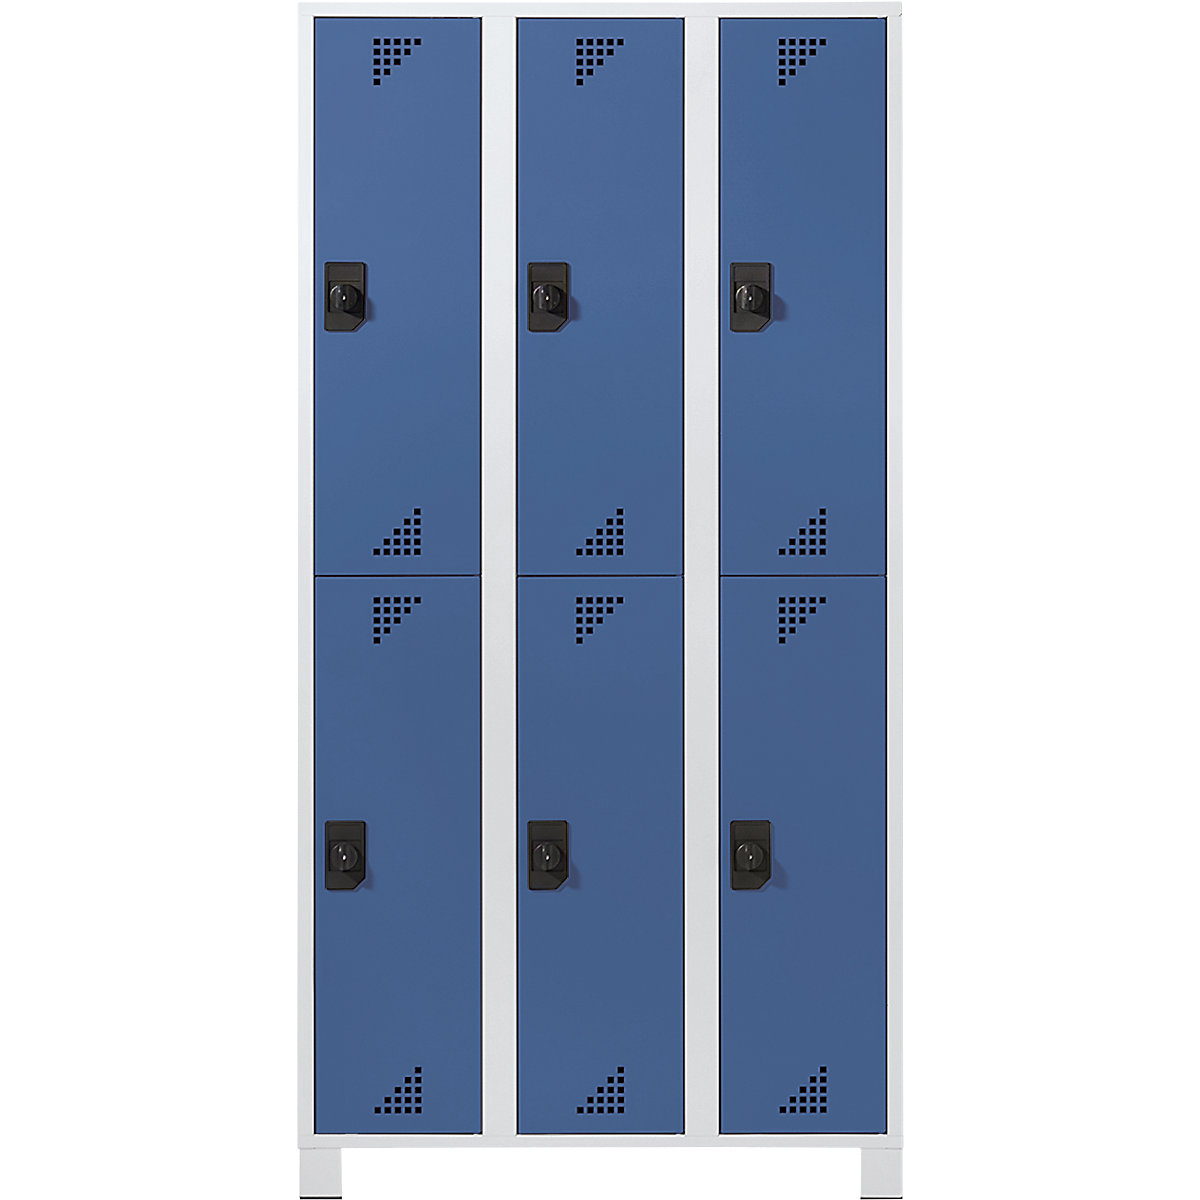 EUROKRAFTpro – Šatníková skriňa s polovysokými priehradkami, v x š x h 1800 x 900 x 500 mm, 6 boxov, korpus svetlošedá, dvere briliantová modrá